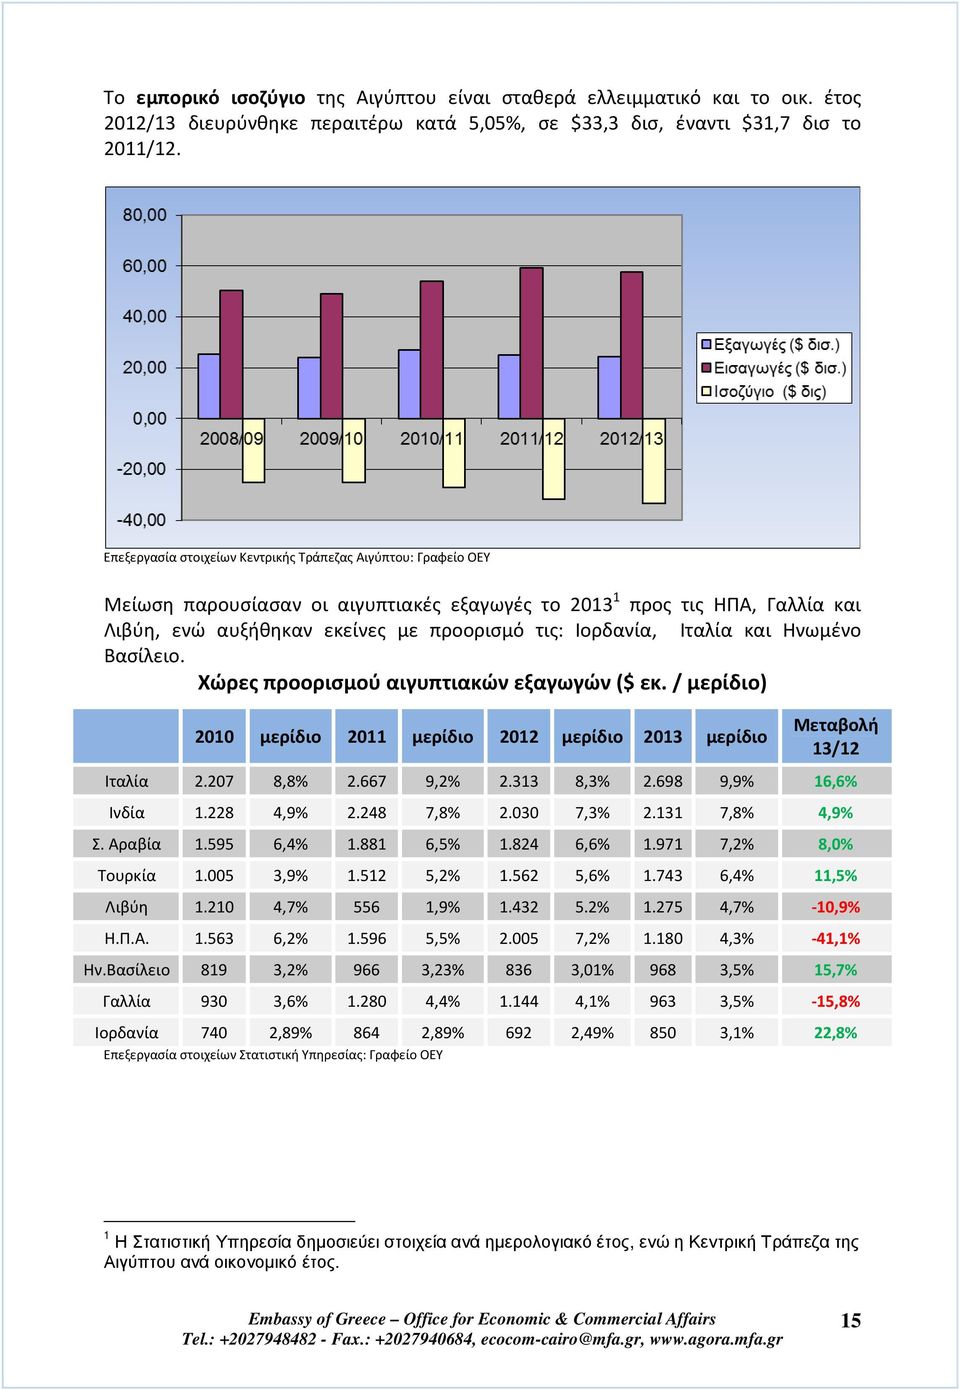 Ιταλία και Ηνωμένο Βασίλειο. Χώρες προορισμού αιγυπτιακών εξαγωγών ($ εκ. / μερίδιο) 2010 μερίδιο 2011 μερίδιο 2012 μερίδιο 2013 μερίδιο Μεταβολή 13/12 Ιταλία 2.207 8,8% 2.667 9,2% 2.313 8,3% 2.